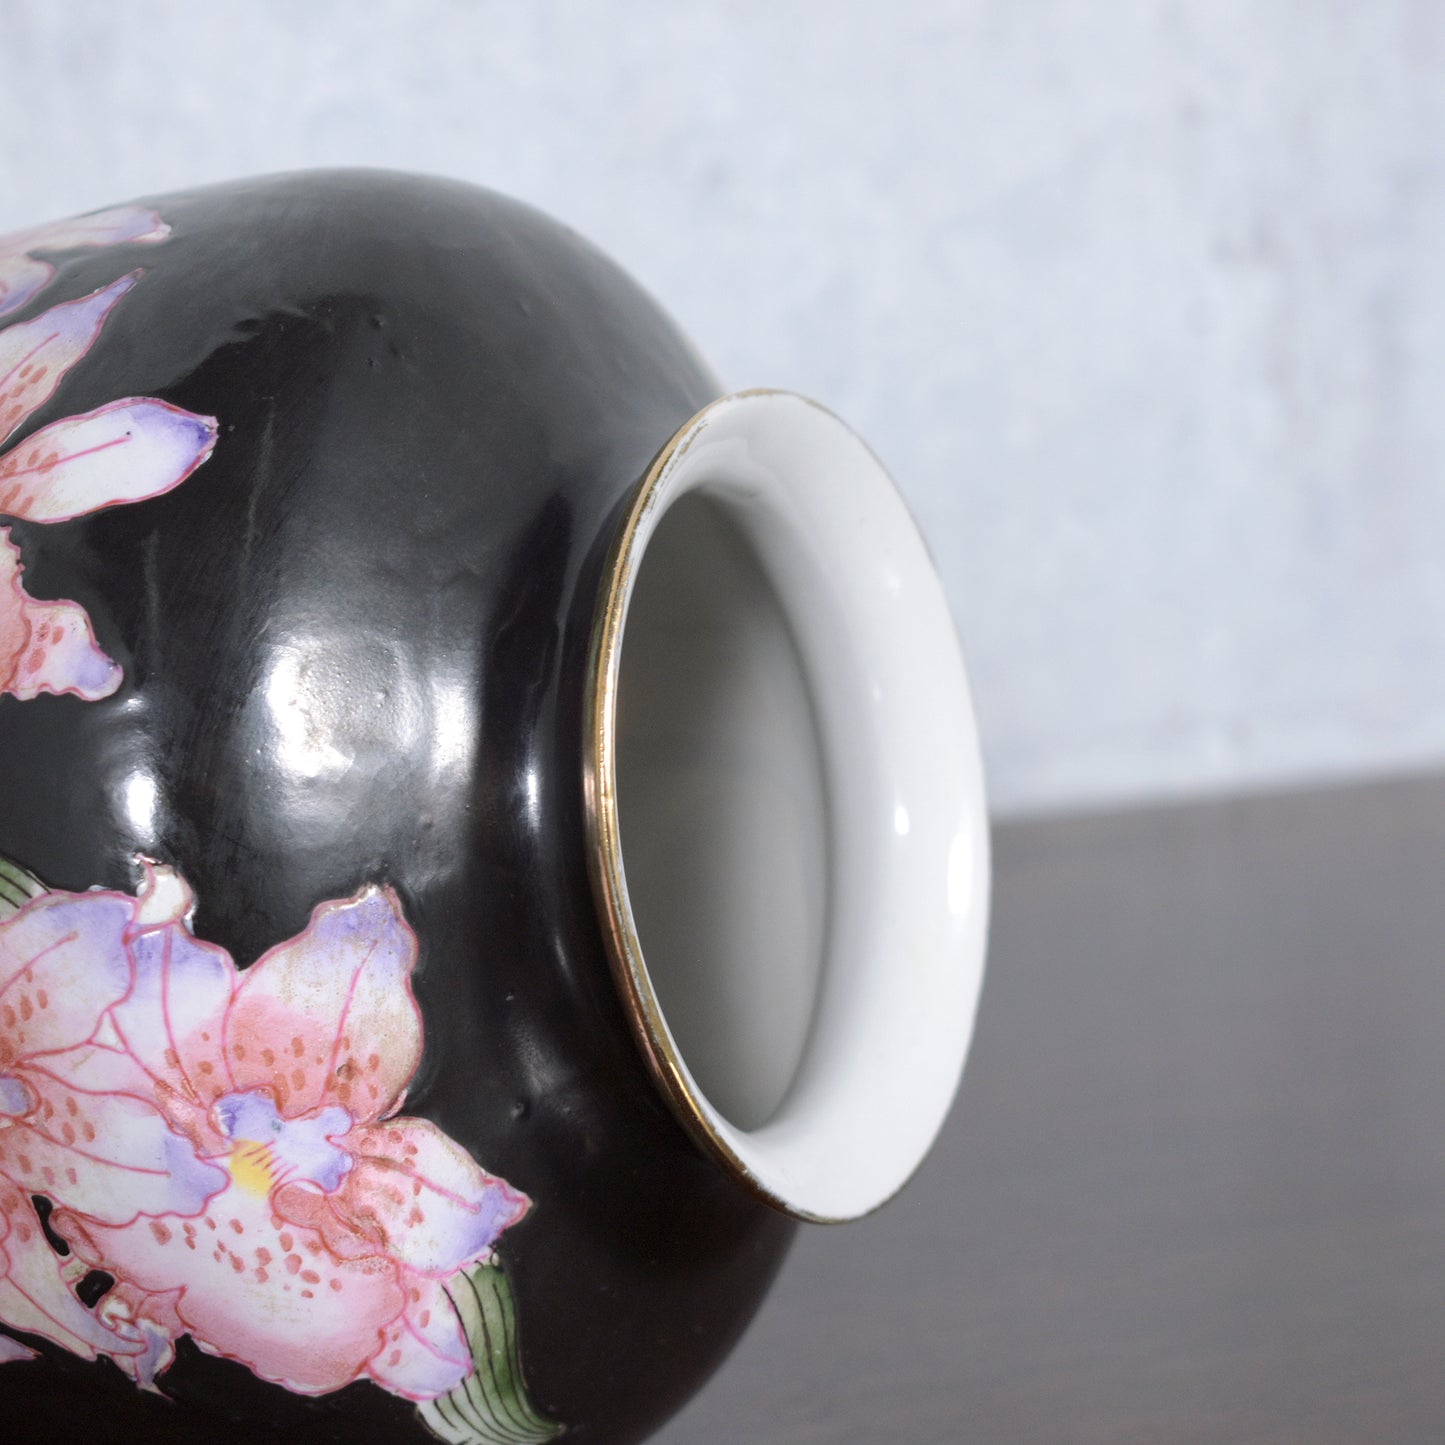 Vintage Porcelain Vase with Floral Pattern & Glazed Finish: Elegant Décor Accent